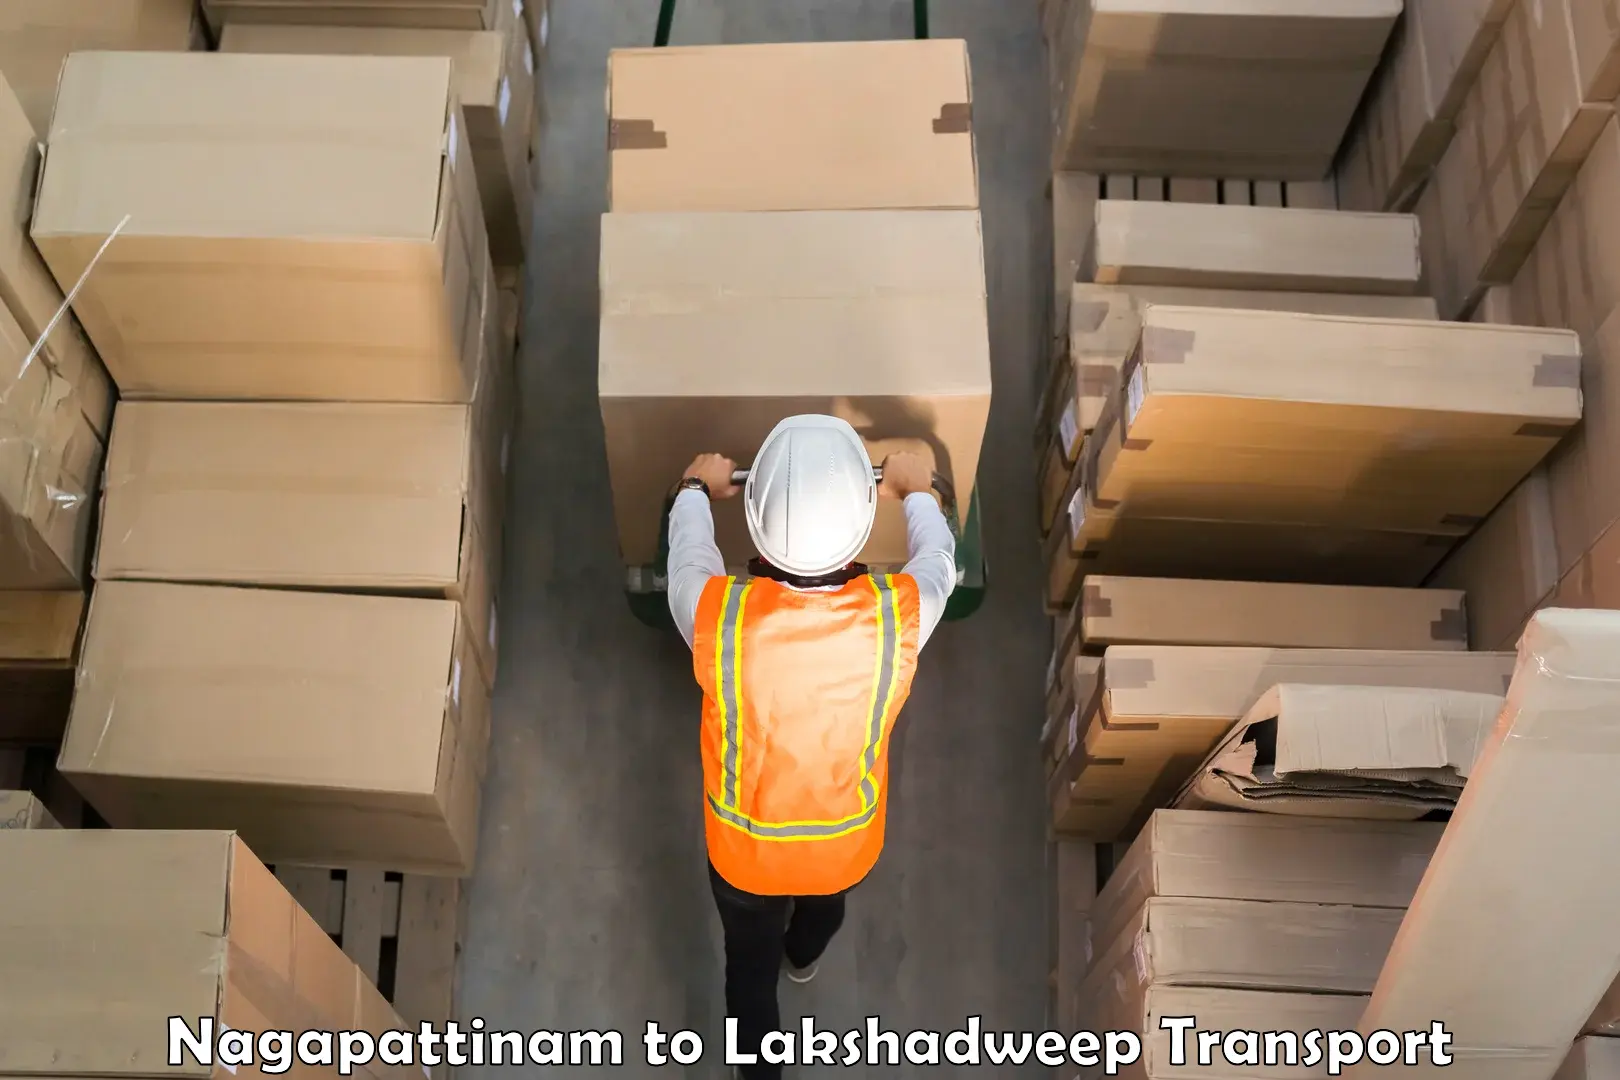 Furniture transport service Nagapattinam to Lakshadweep